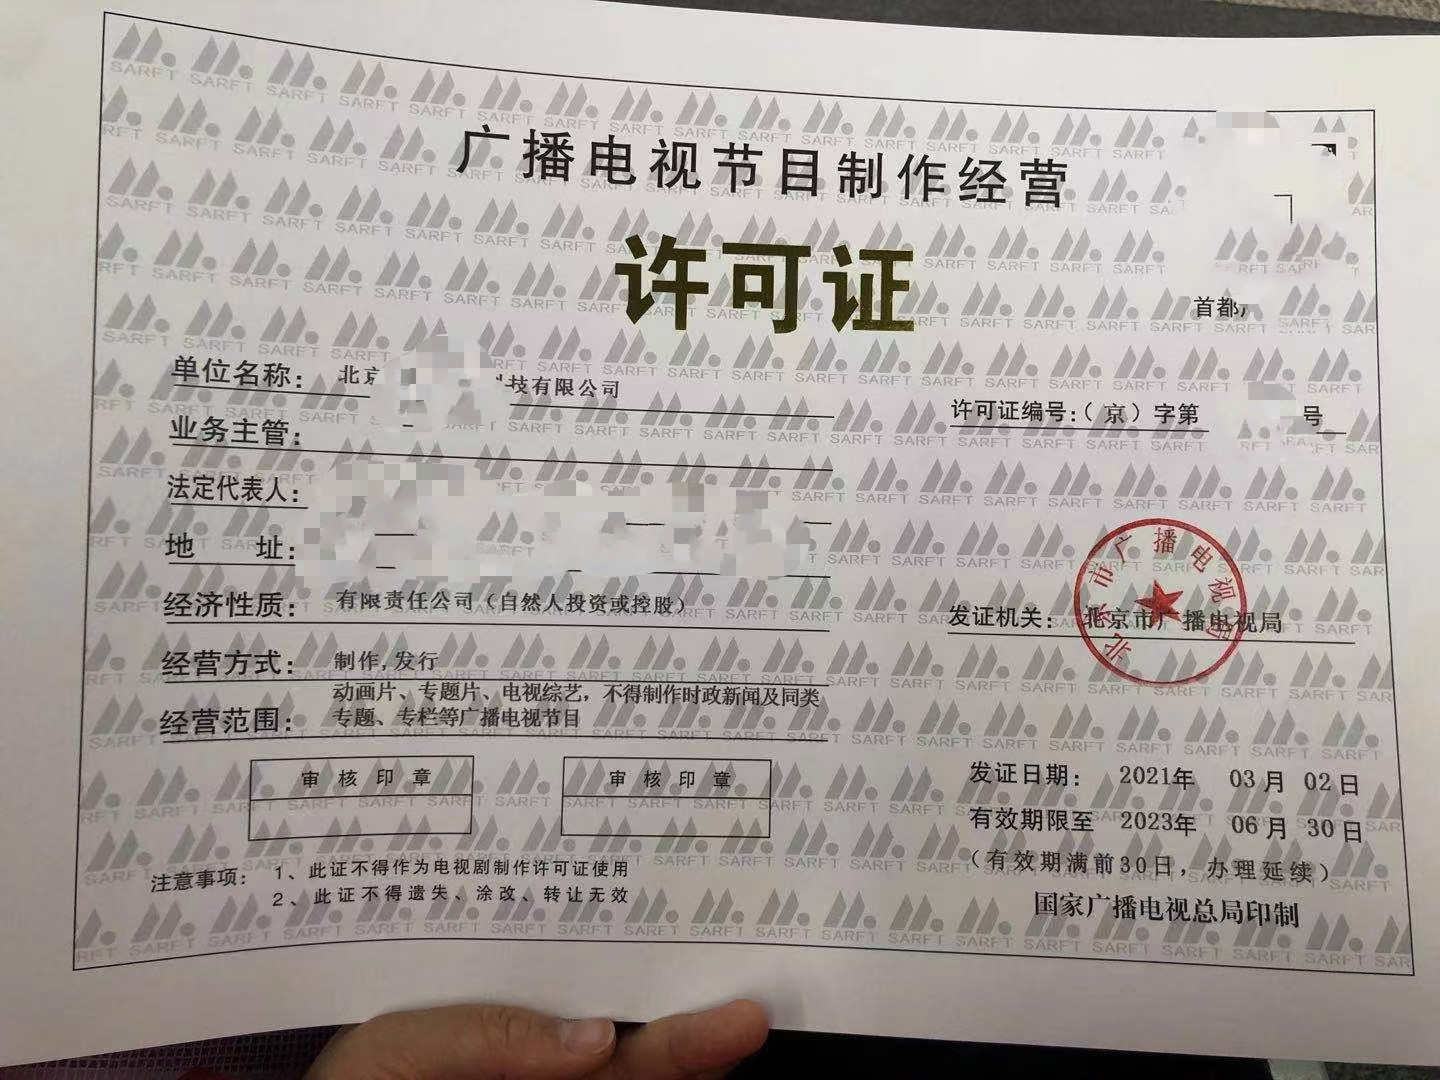 附则流程北京市丰台区广播电视节目制作经营许可证